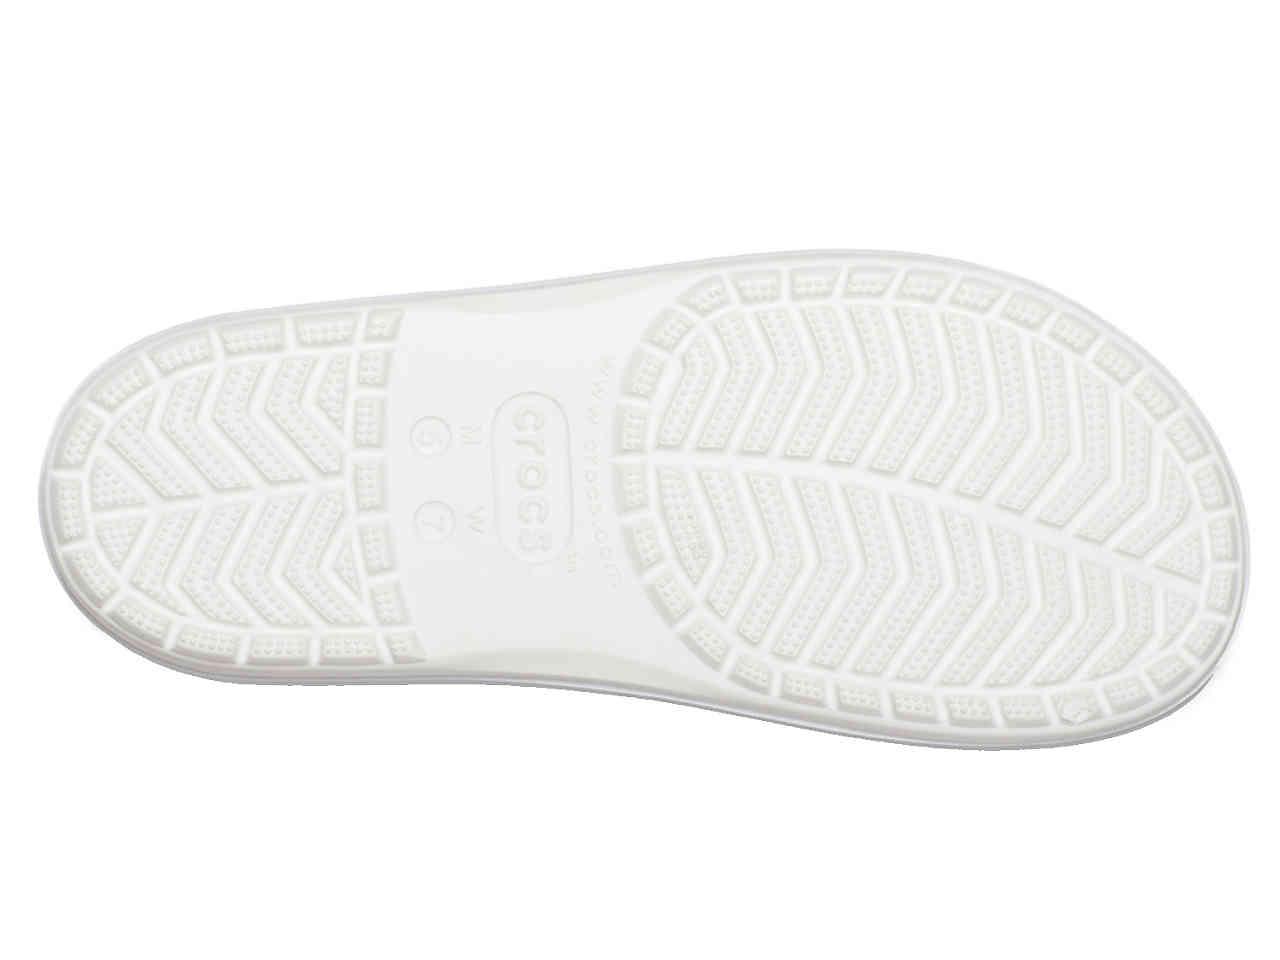 crocs bold color platform sandal